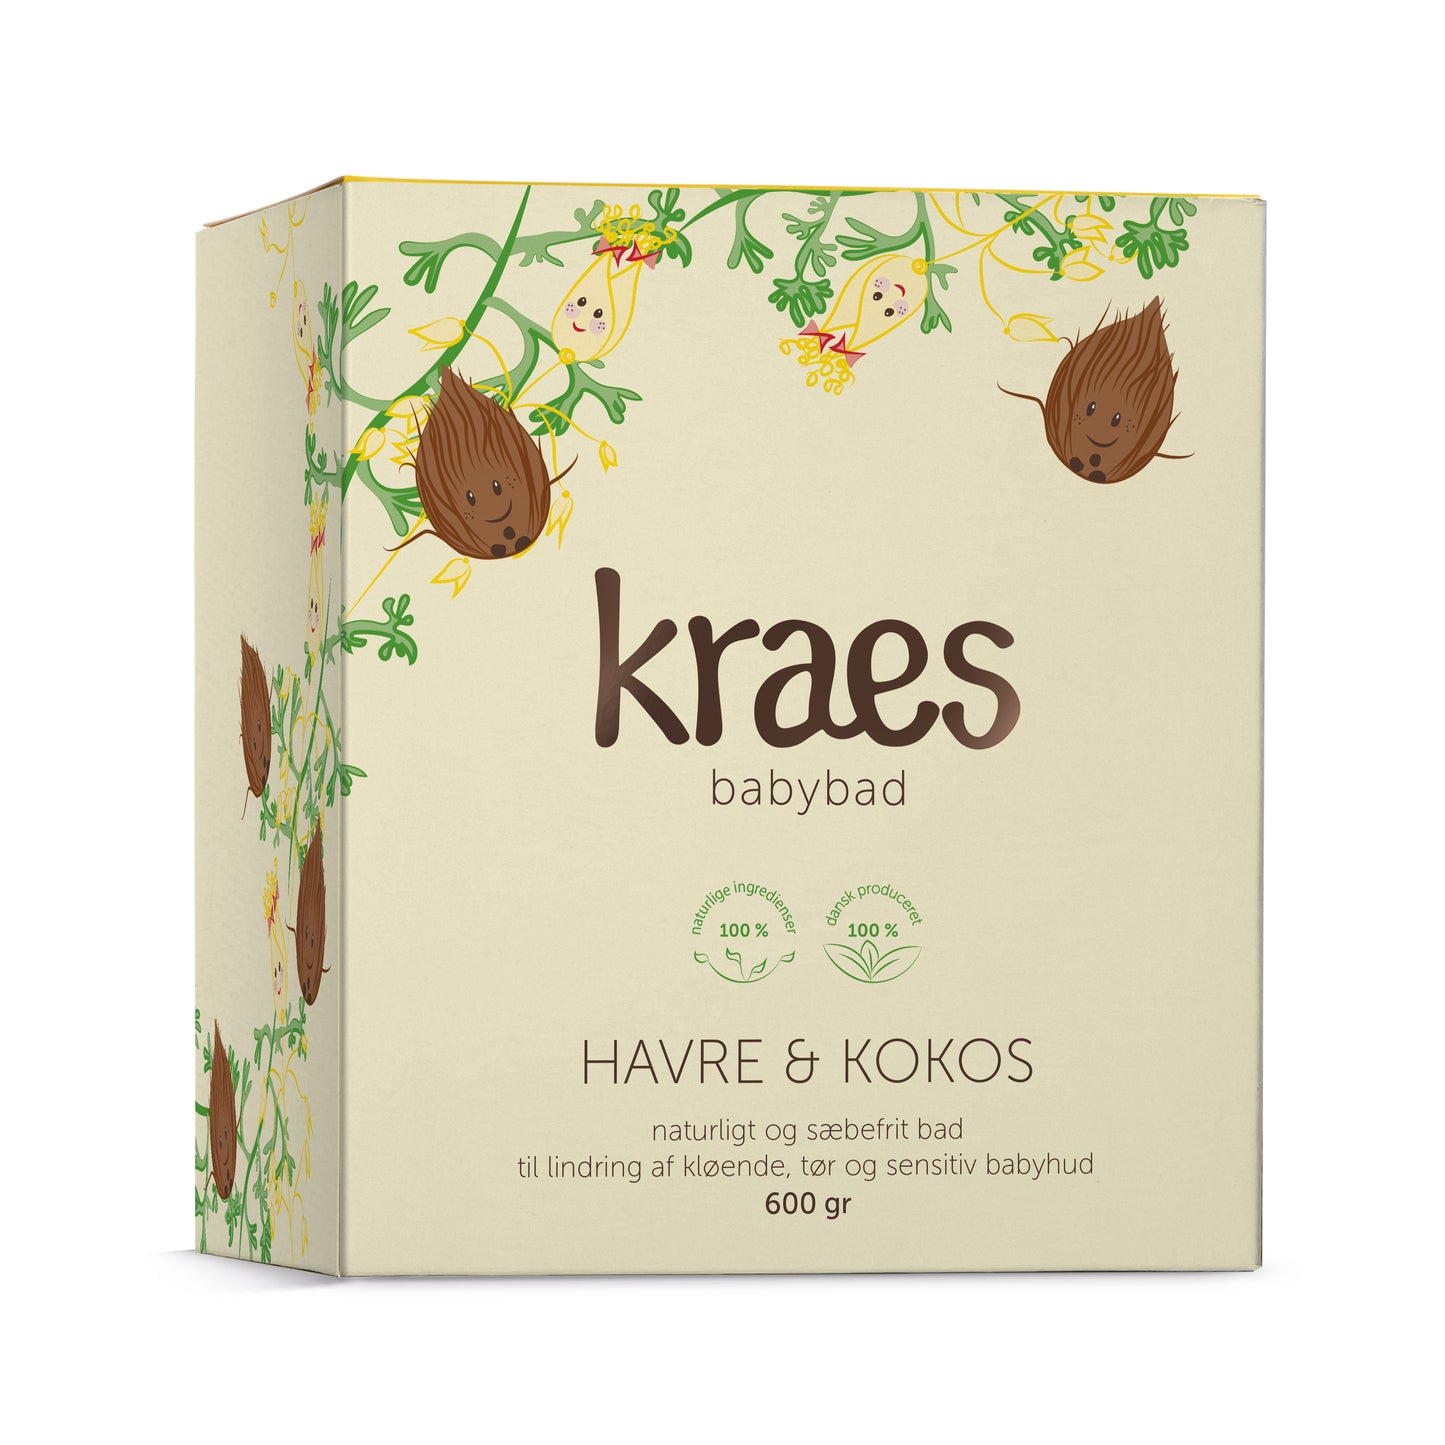 Kraes - Babybad - Havre & Kokos